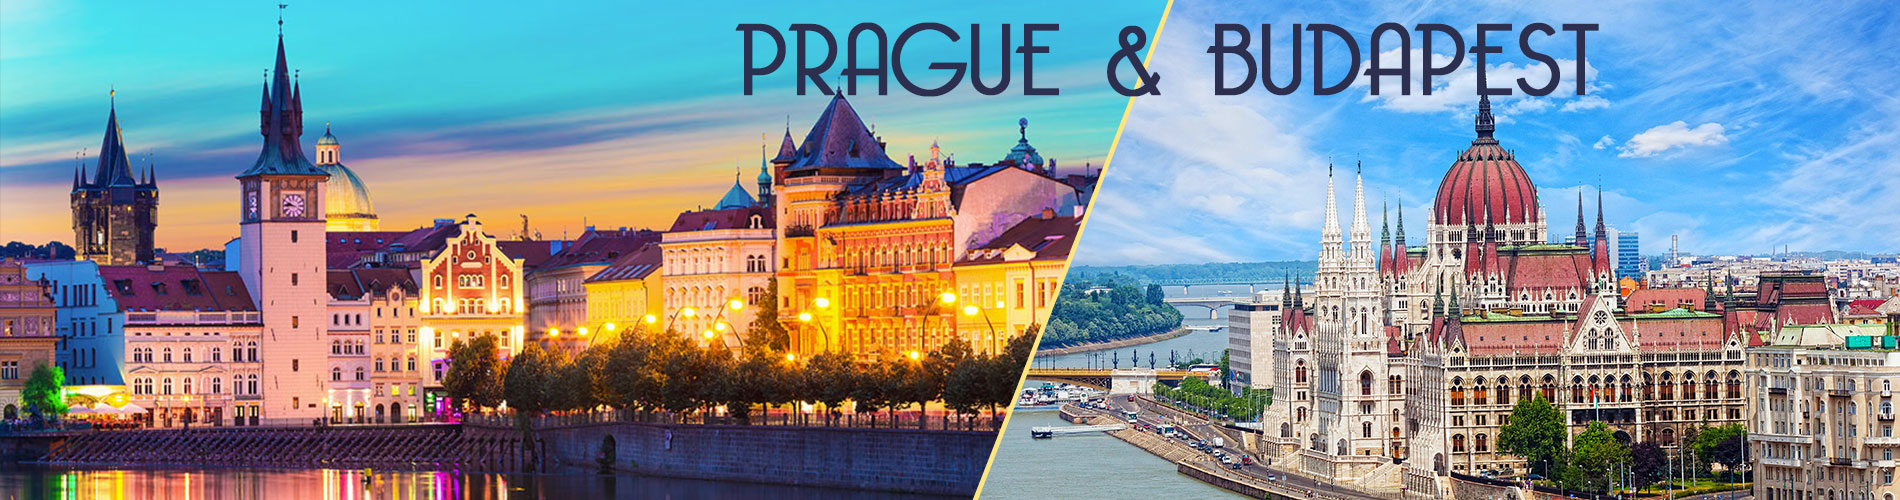 Prague & Budapest